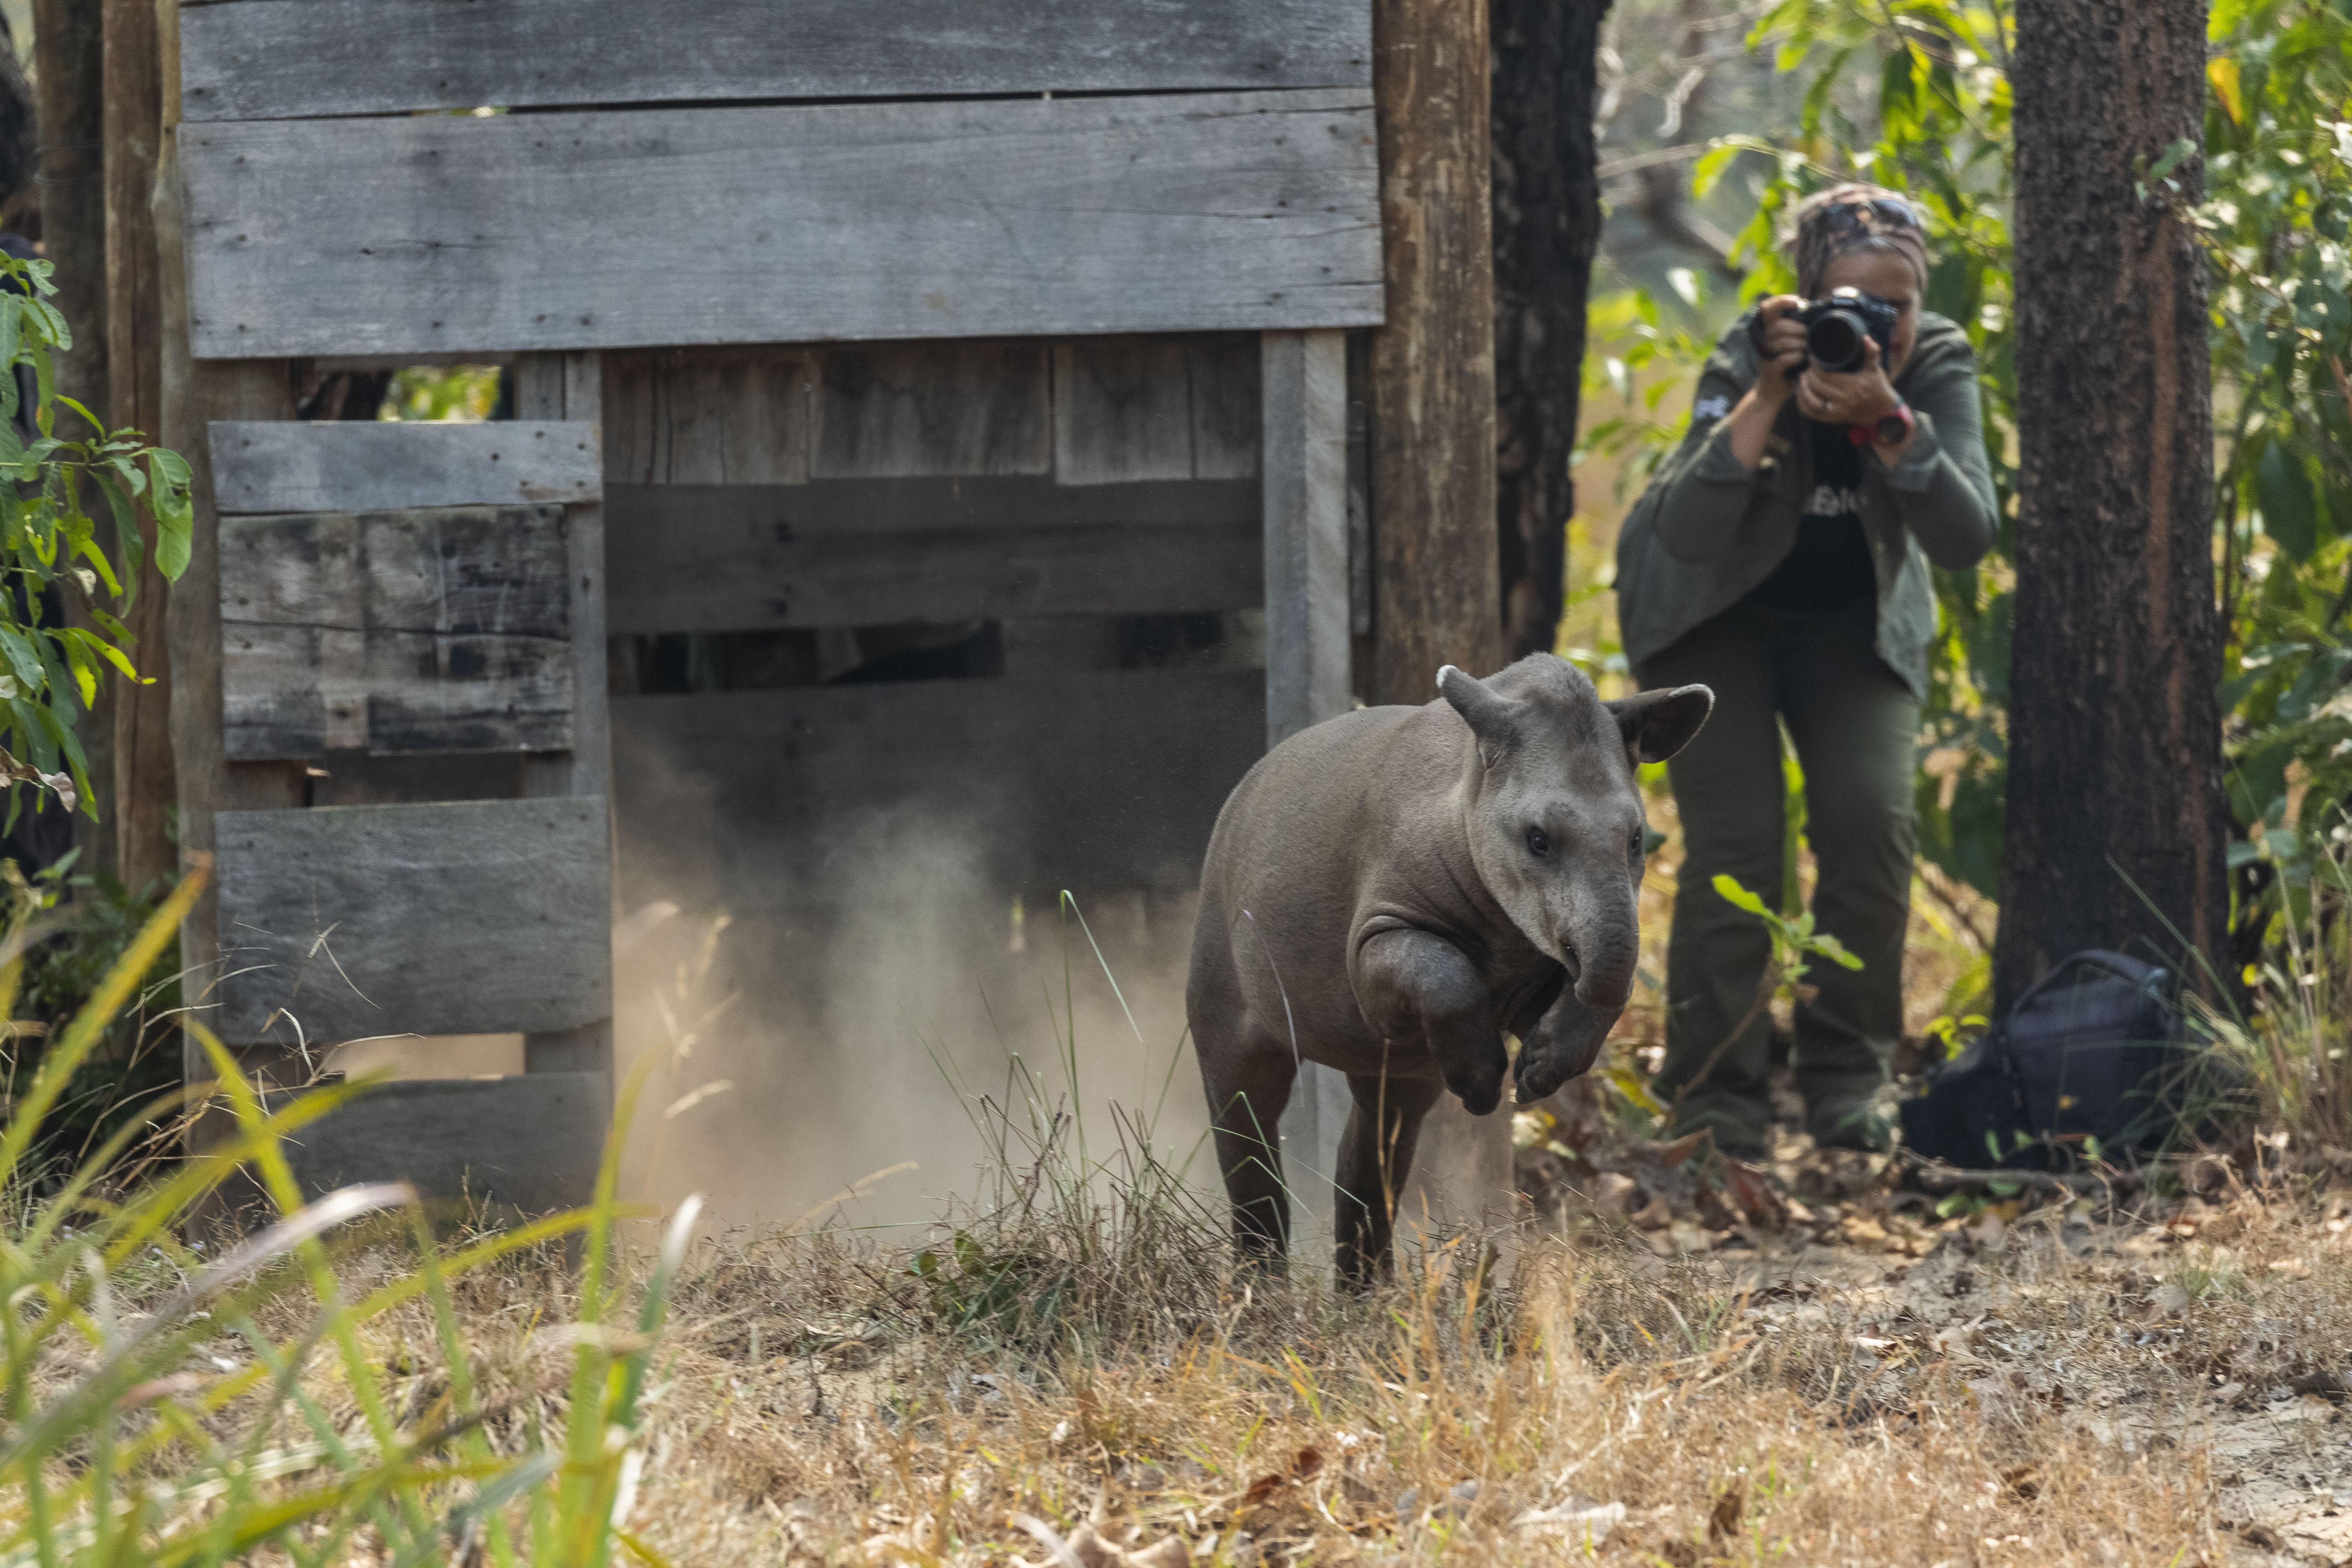 Aquidauana_MS, 18 de agosto de 2019Pesquisadora Patricia Medici desenvolvendo seu trabalho de pesquisa com a anta (Tapirus terrestres) no Pantanal.FOTO: JOAO MARCOS ROSA/NITRO (Foto: JOAO MARCOS ROSA/NITRO)